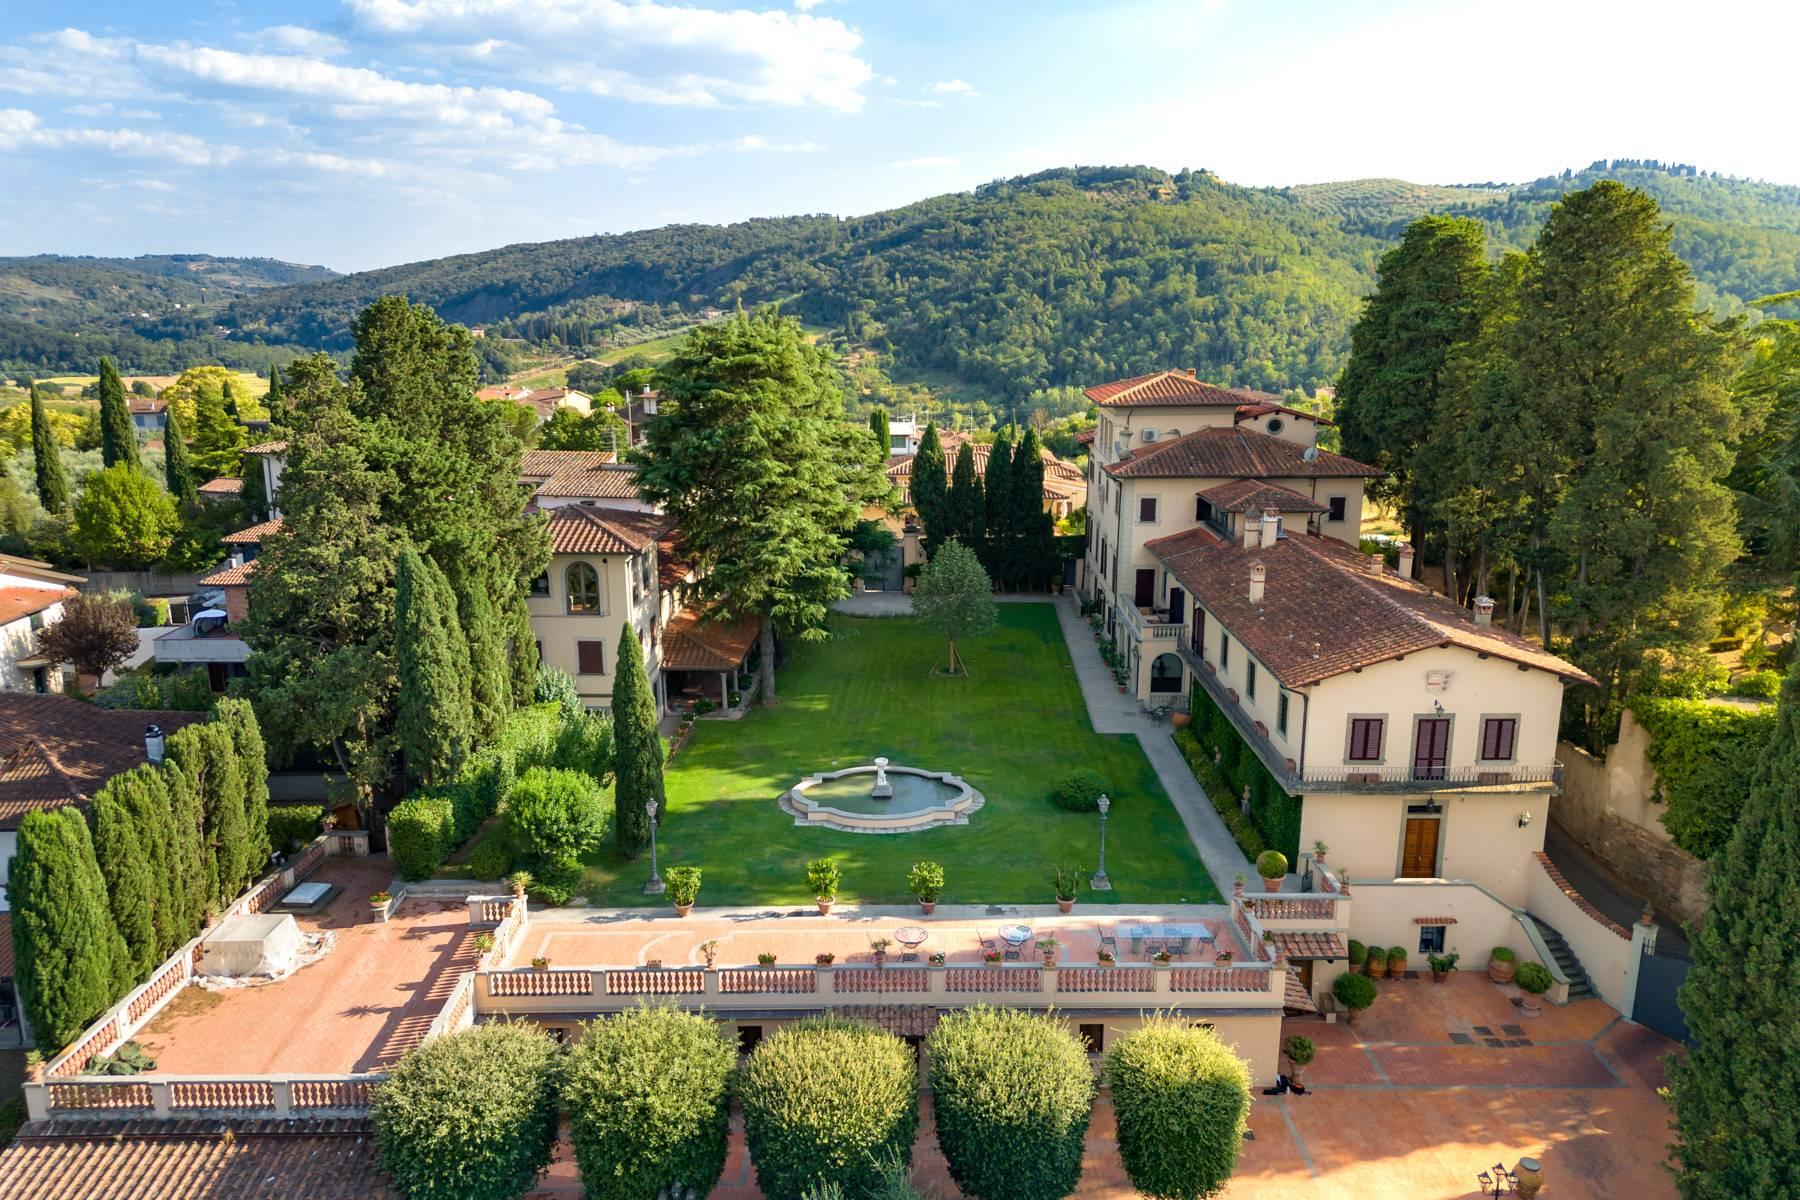 Appartement dans une villa historique sur les collines de Carmignano - 5